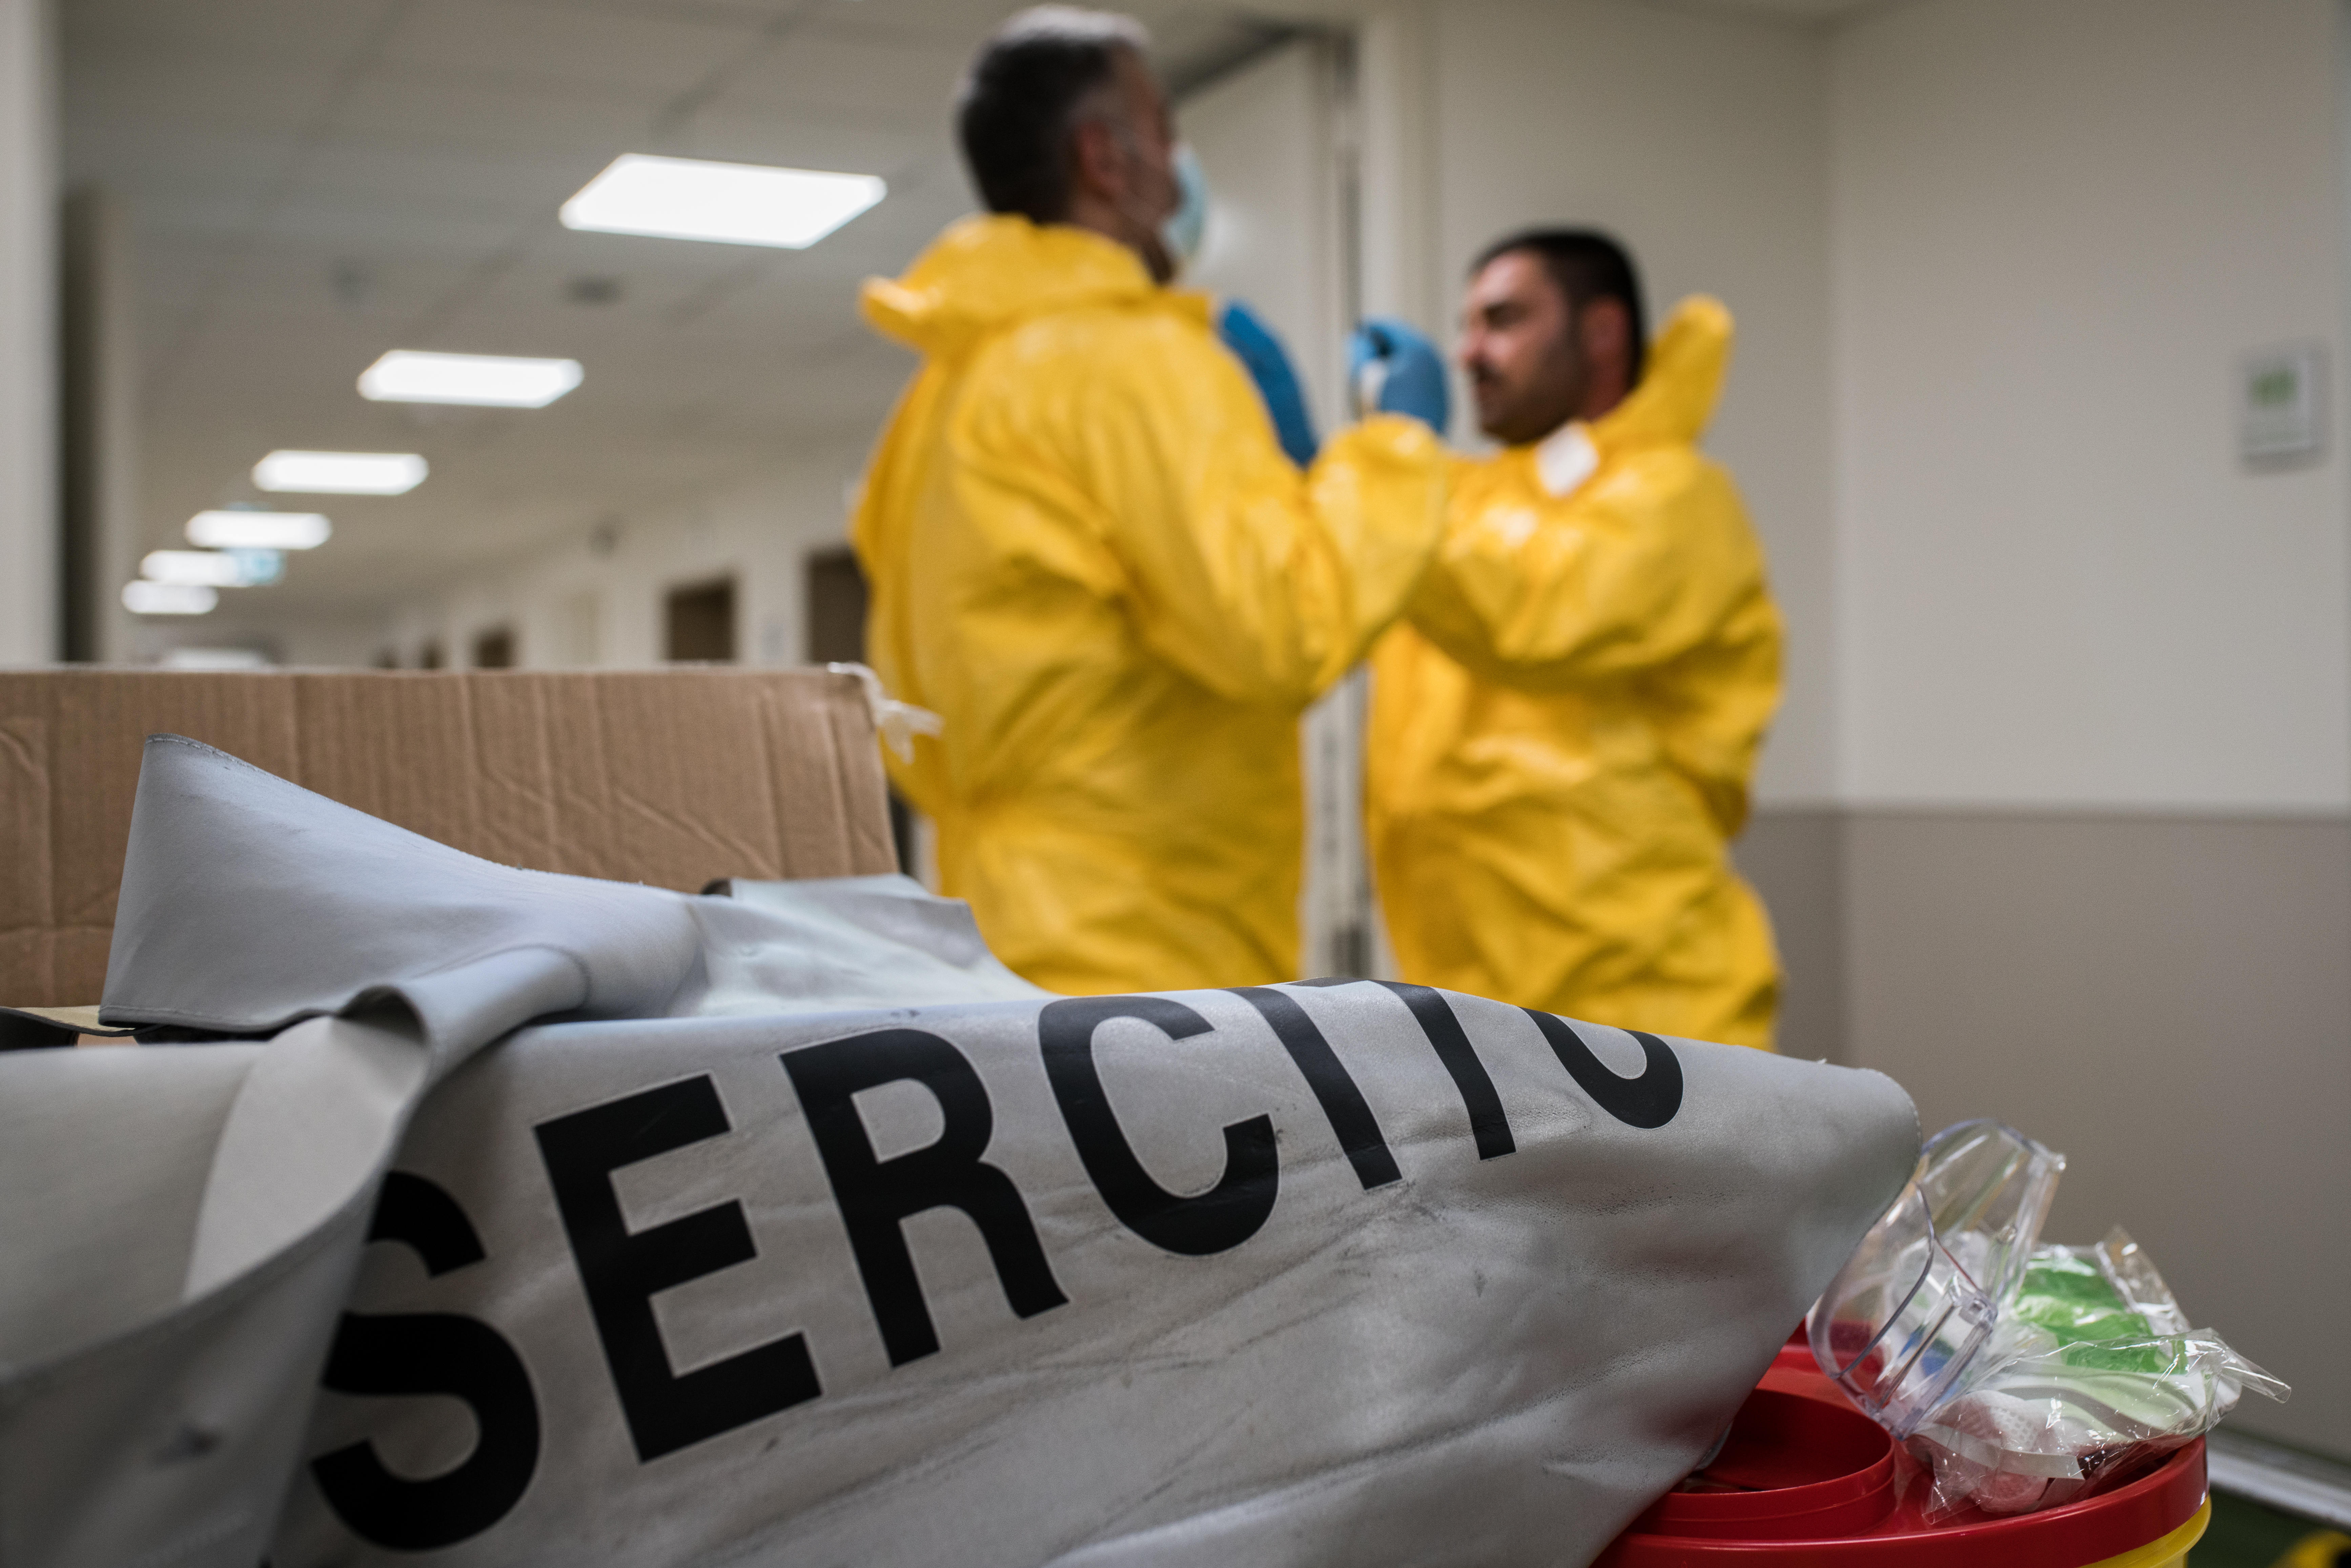 Coronavirus, sanificazione in corso all’ospedale di Saronno ad opera di 5 militari del nucleo disinfettori